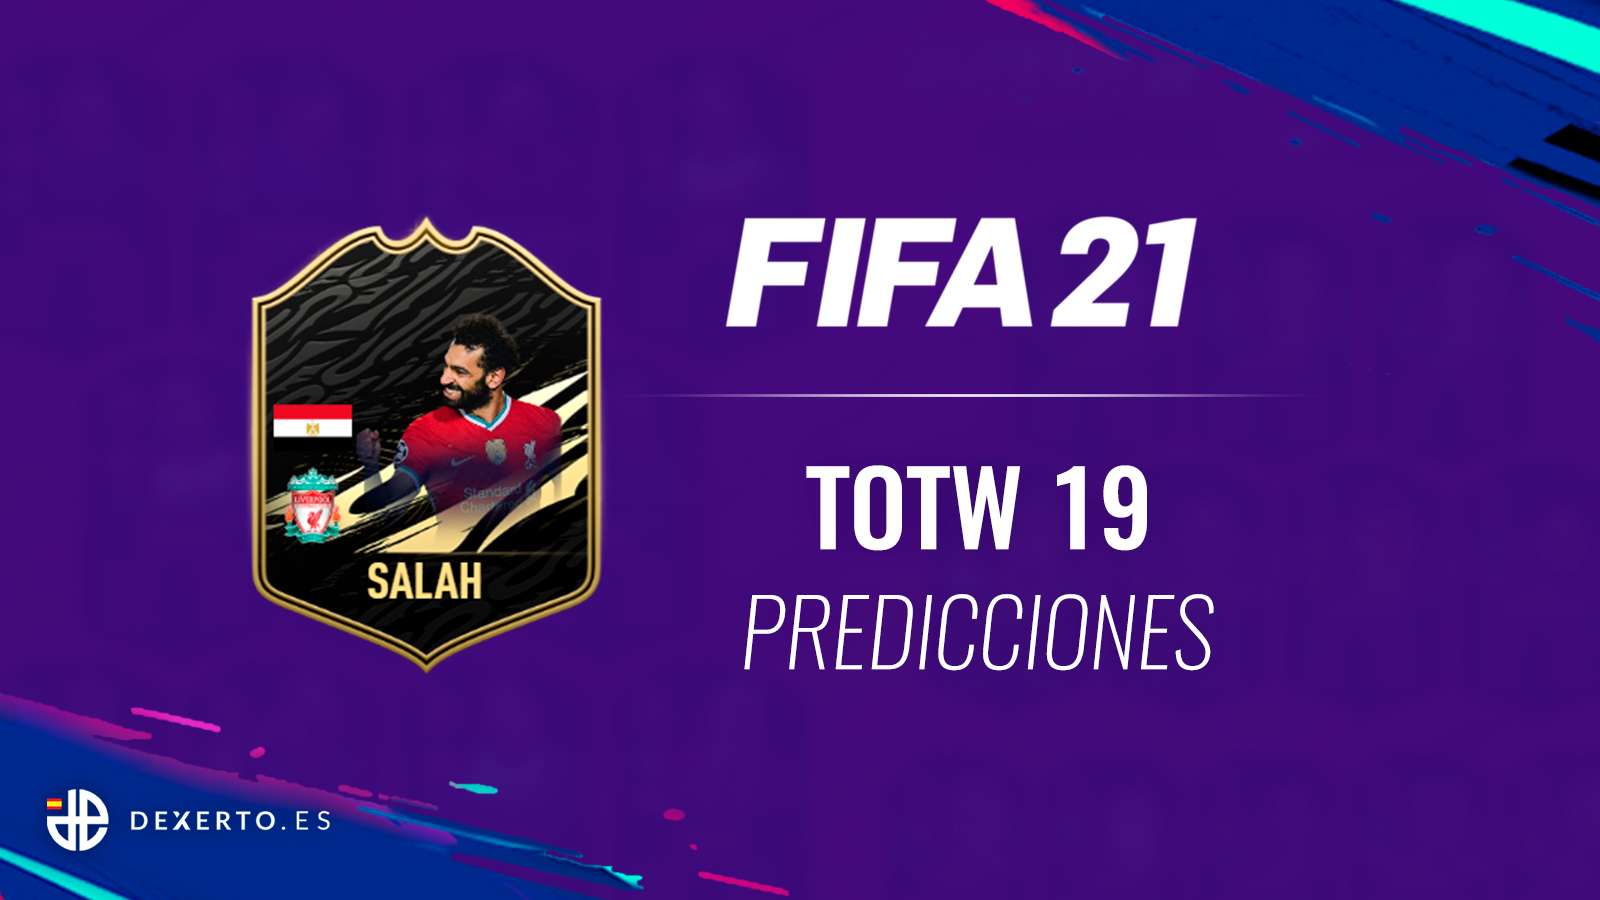 Salah FIFA 21 TOTW 19 Predicciones